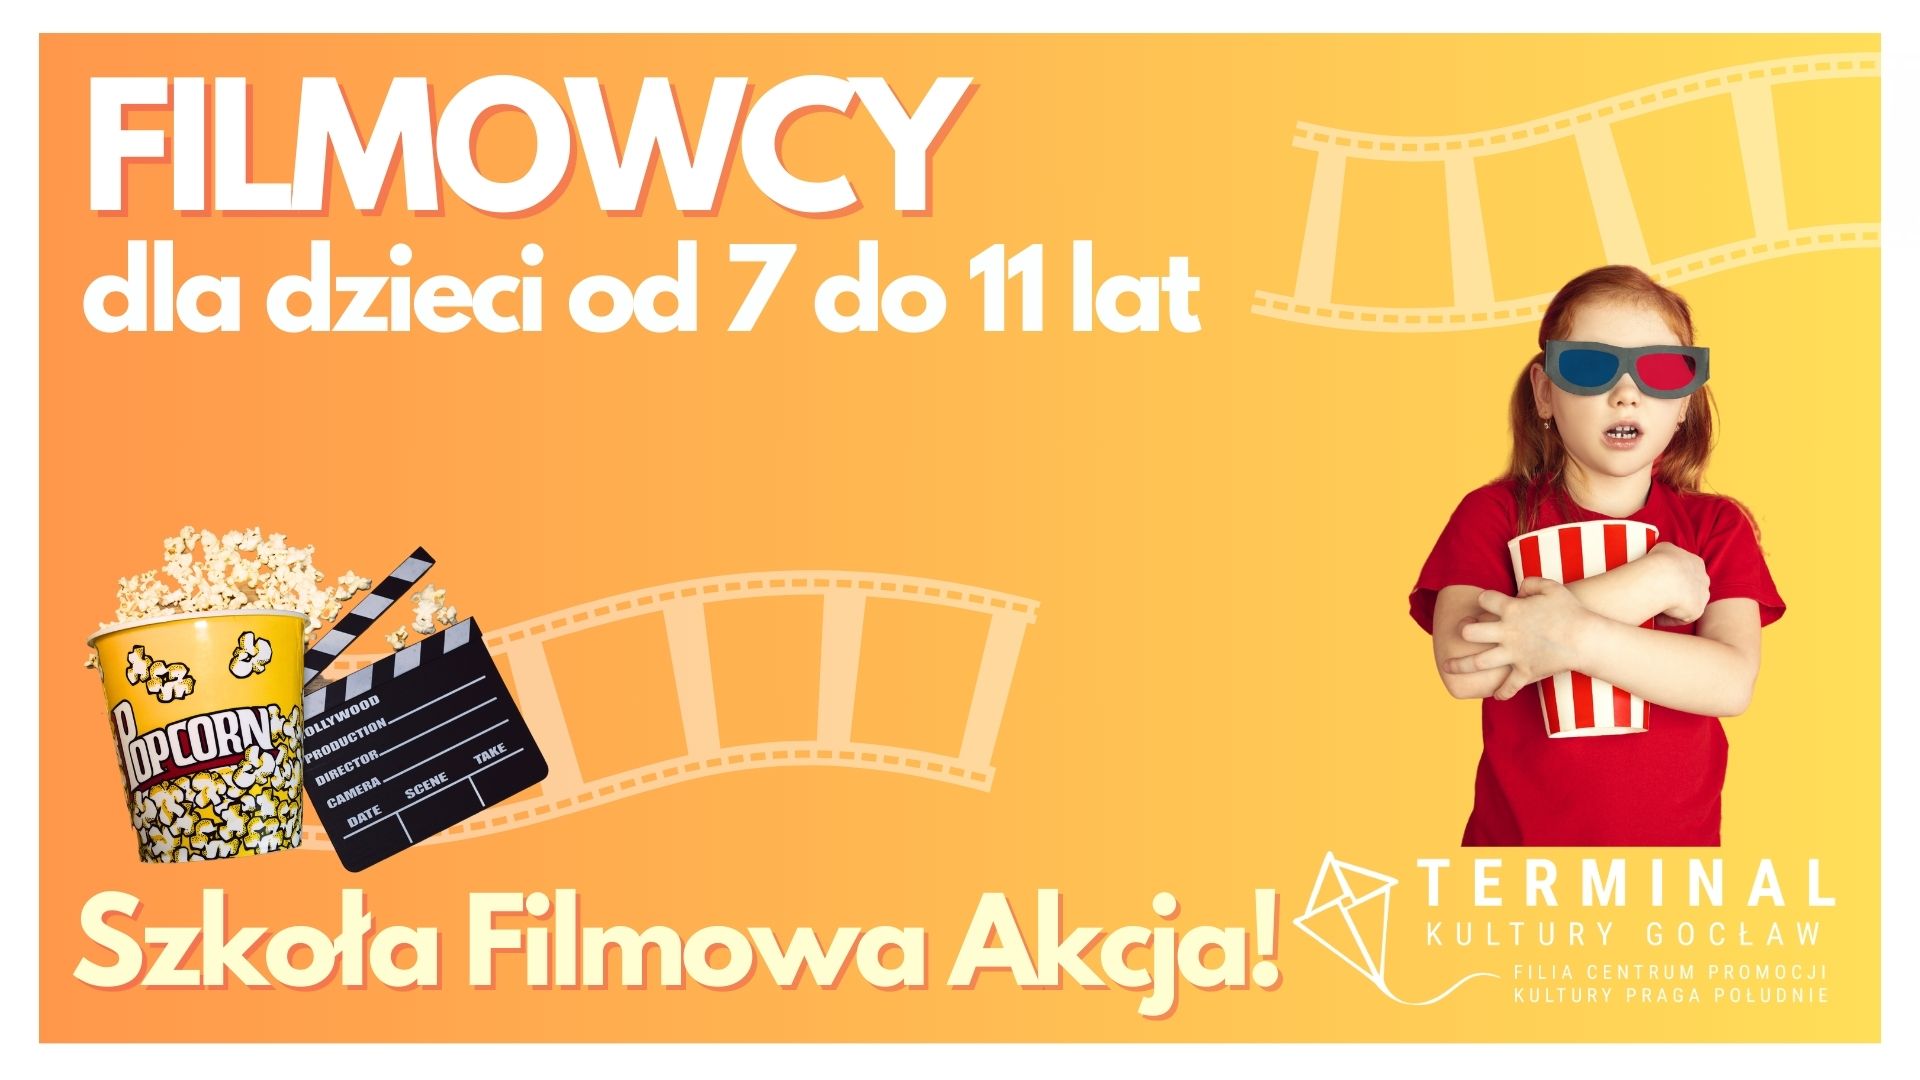 FILMOWCY Szkoła Filmowa Akcja! dla dzieci od 7 do 11 lat